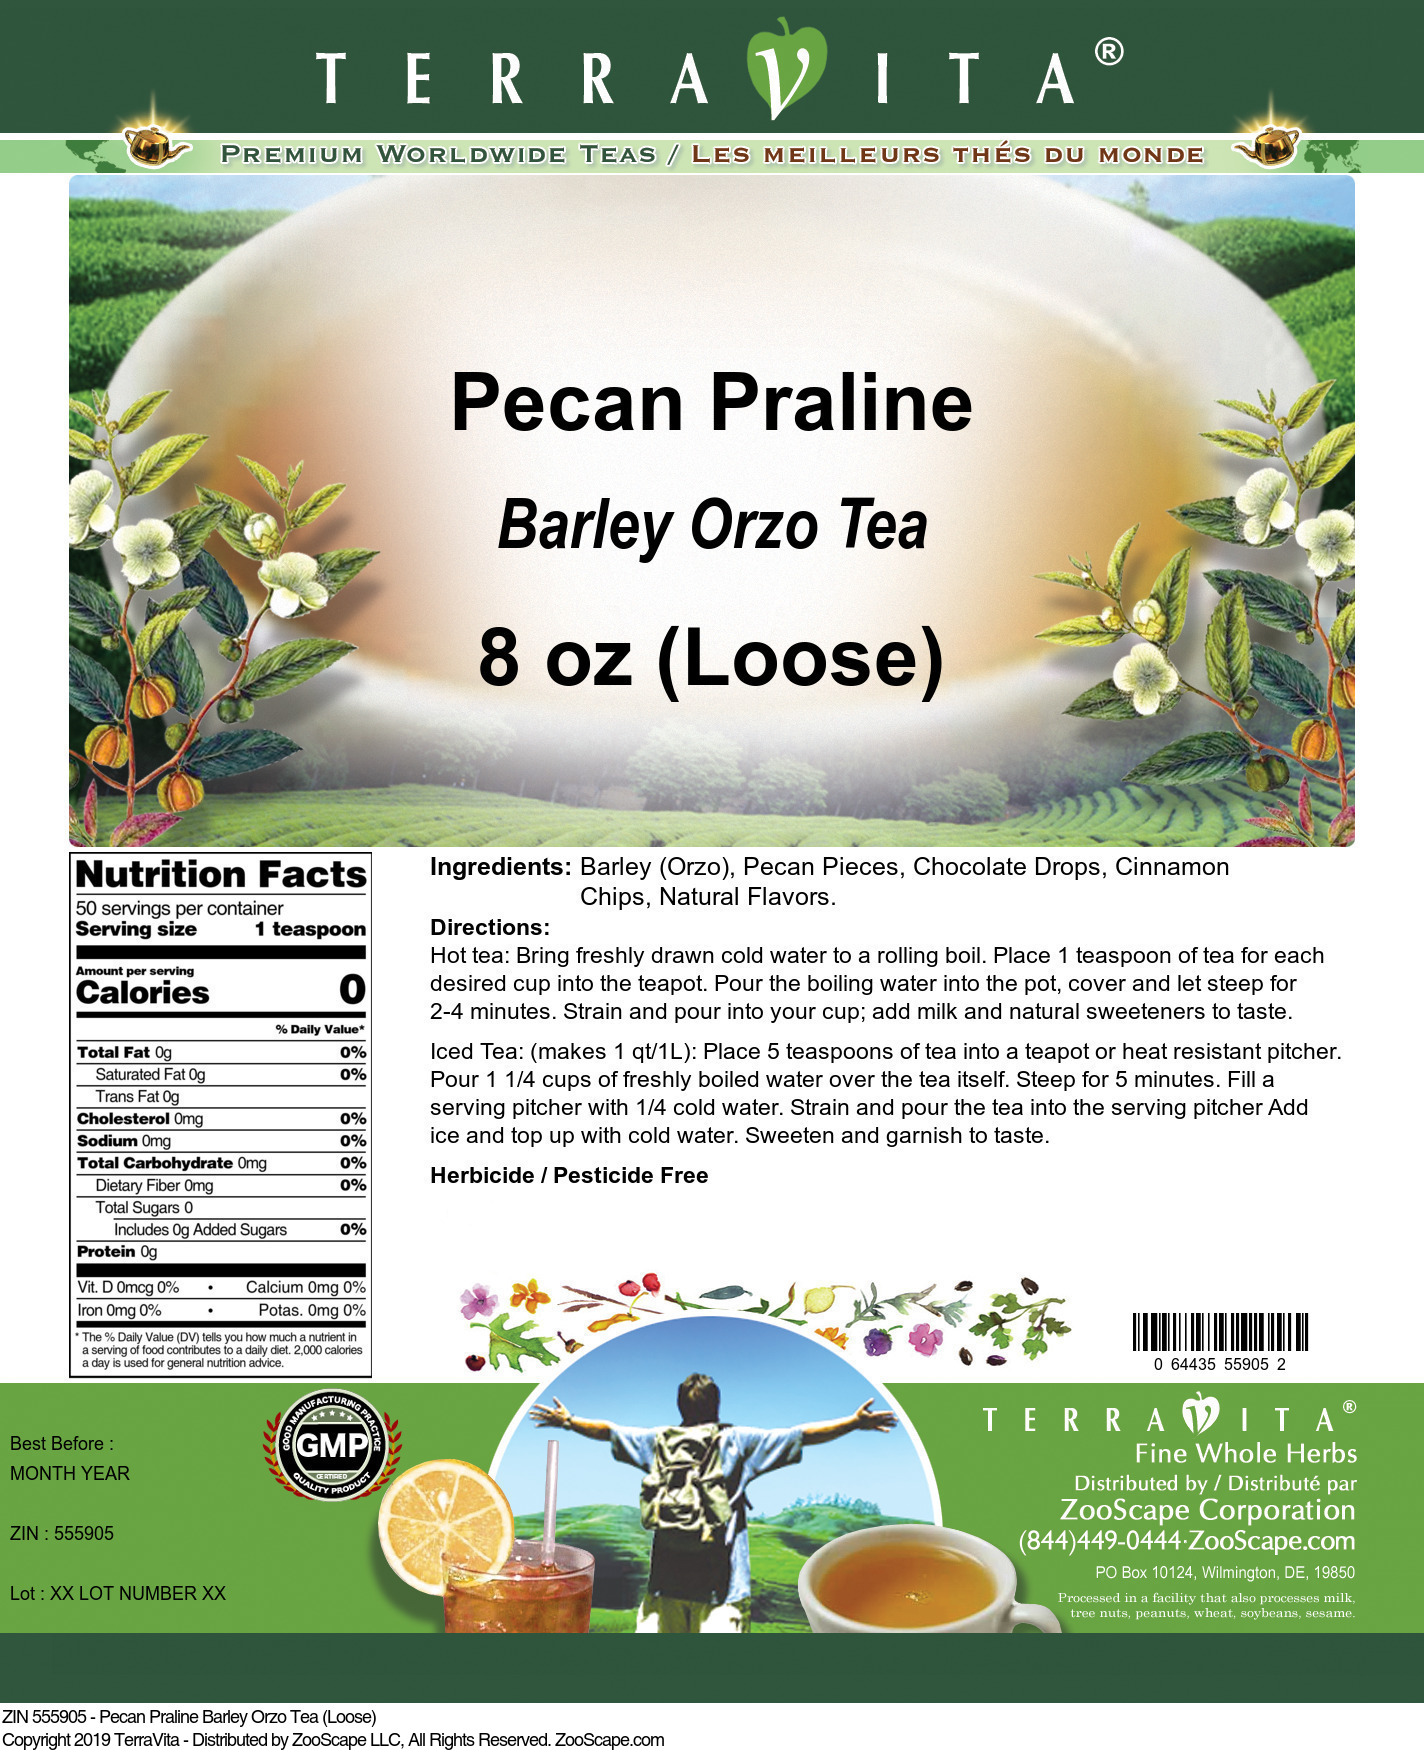 Pecan Praline Barley Orzo Tea (Loose) - Label